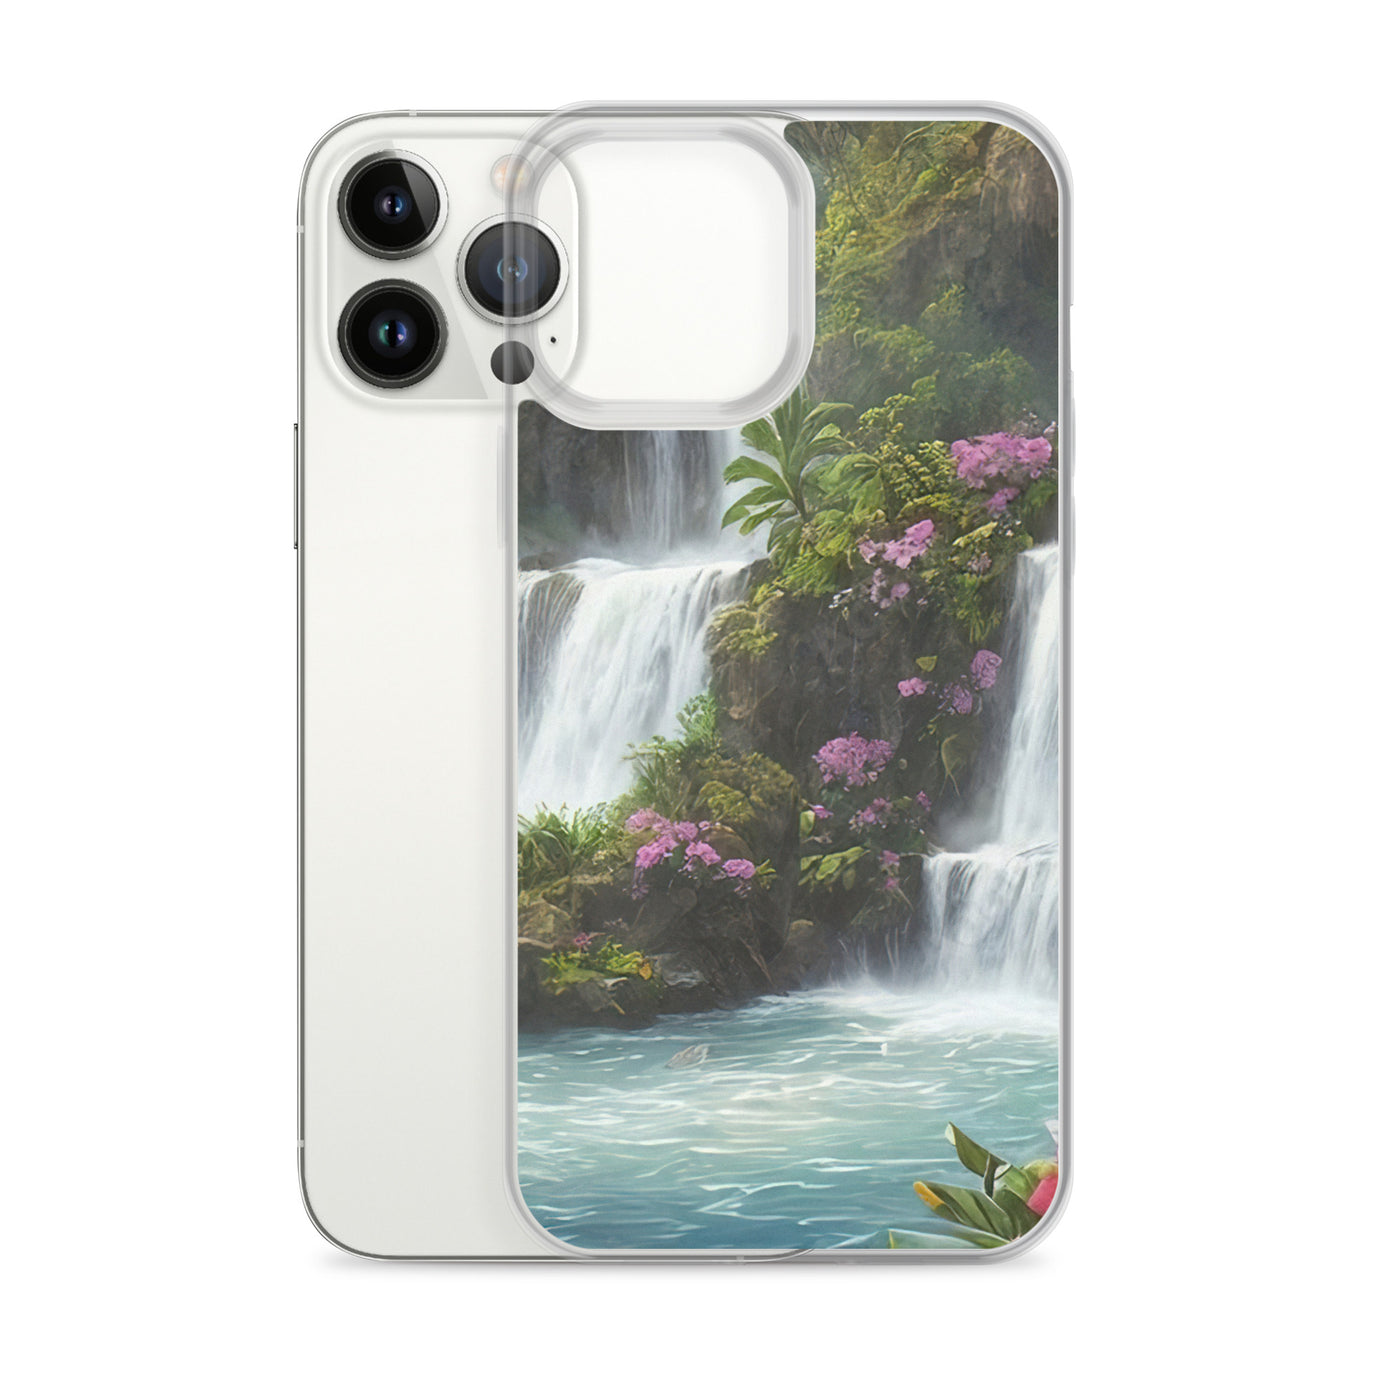 Wasserfall im Wald und Blumen - Schöne Malerei - iPhone Schutzhülle (durchsichtig) camping xxx